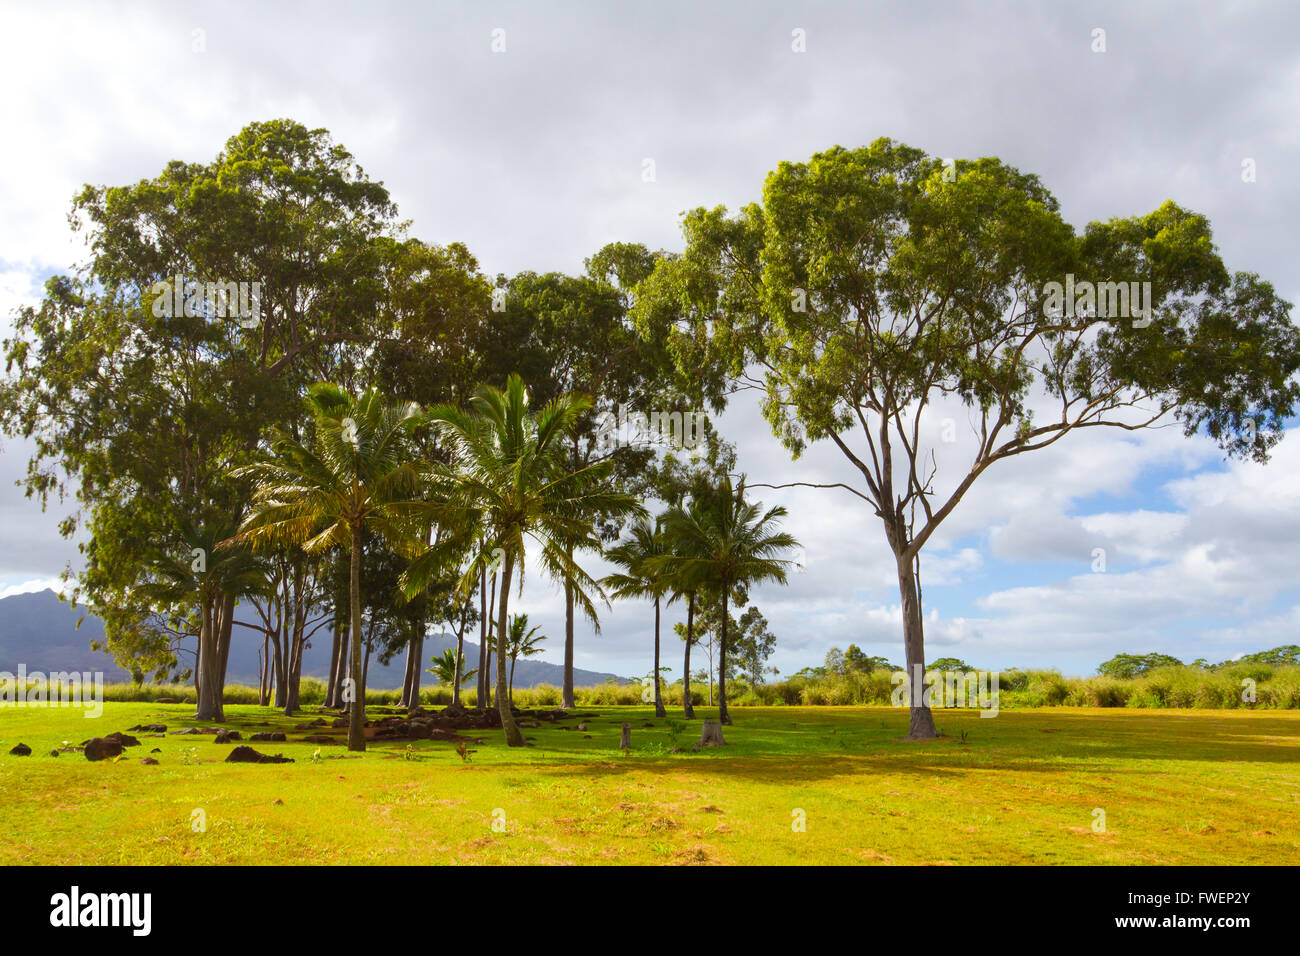 Una ripresa panoramica del centro storico e di attrazione turistica le pietre del parto in Hawaii lungo la North Shore di Oahu. Questo grove o Foto Stock